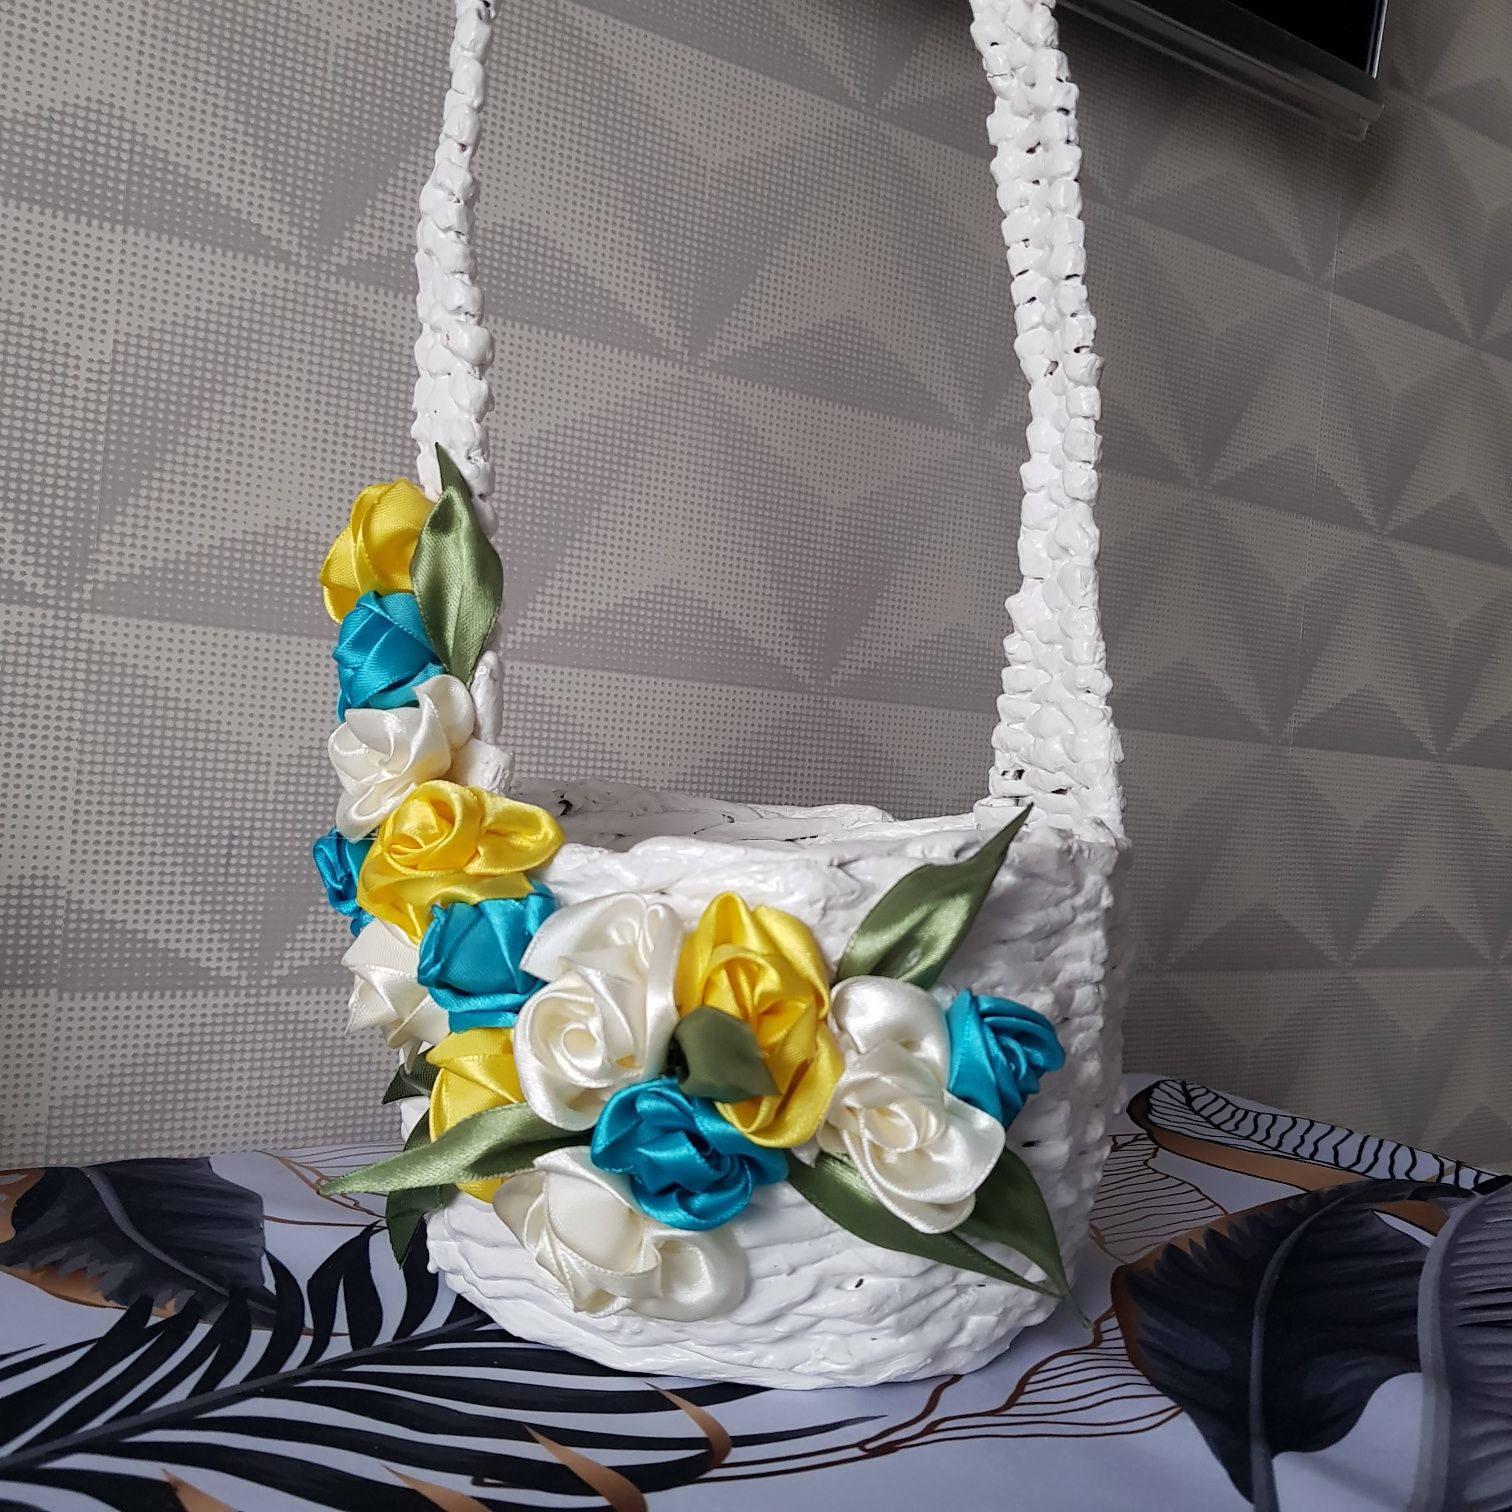 Koszyk rękodzieło zdobiony kwiaty biały wiosenny handmade z kwiatami